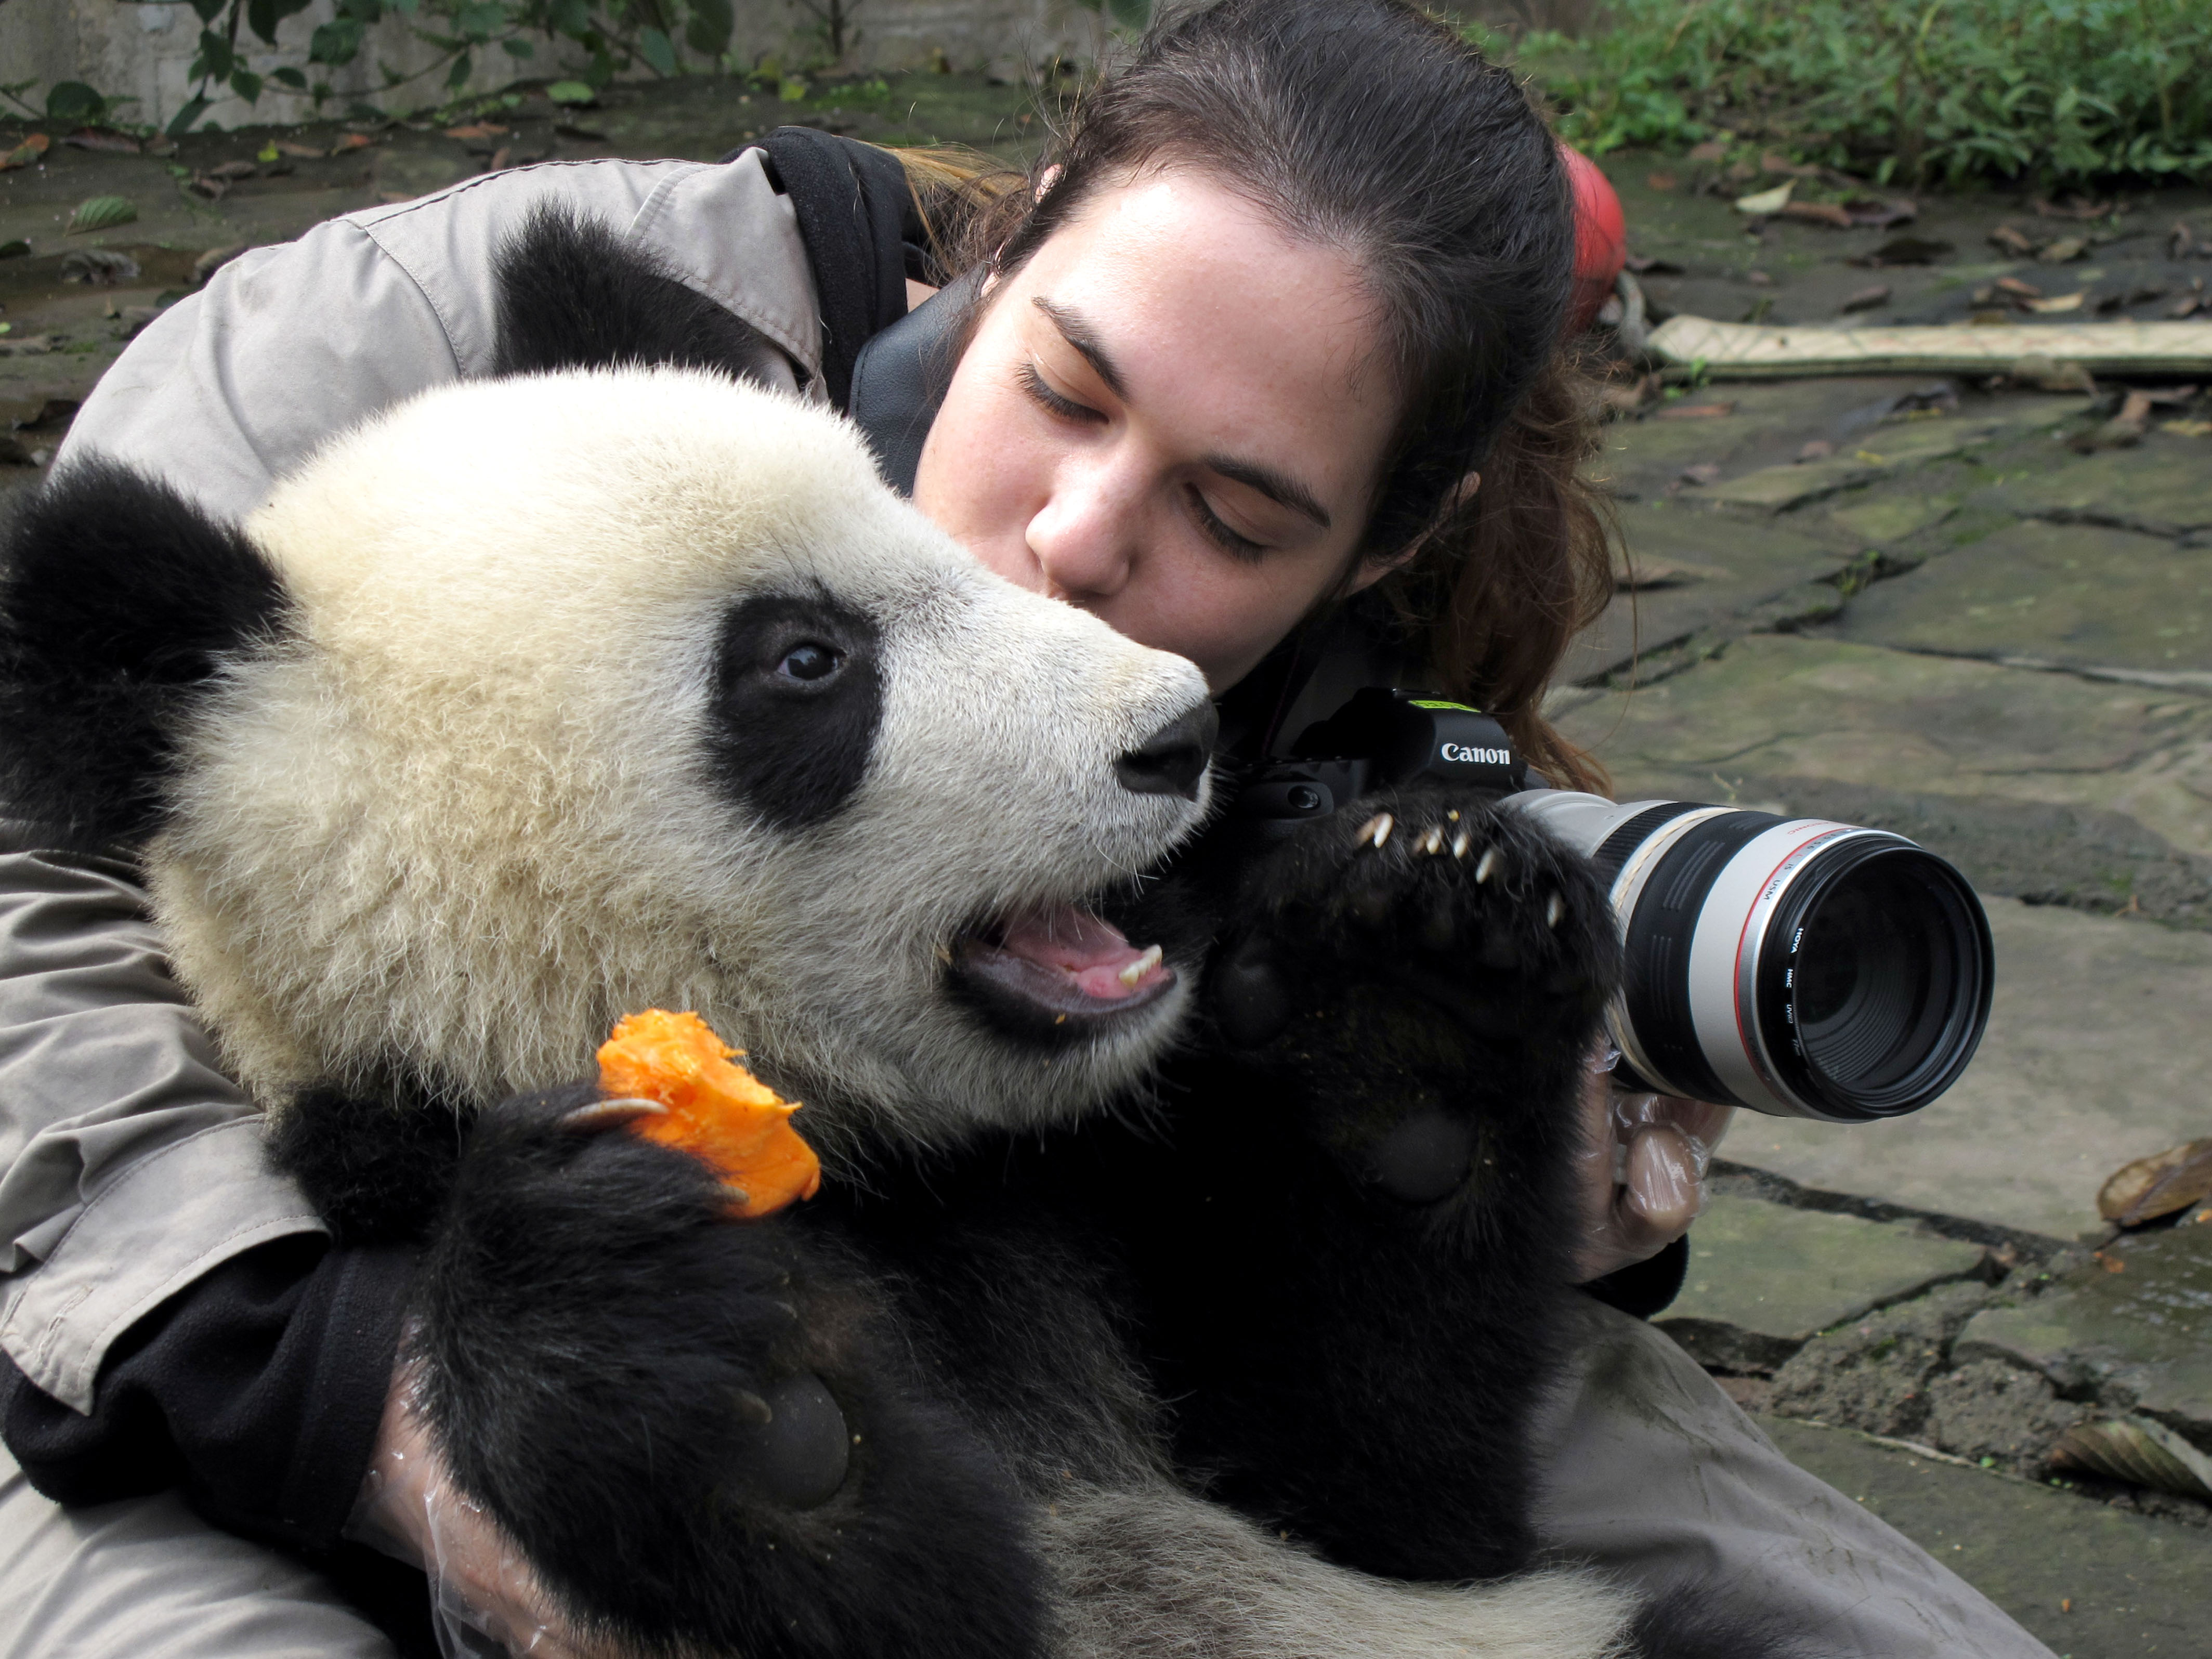 跨物种友谊和谐共处!摄影师晒出与动物亲吻照太有爱